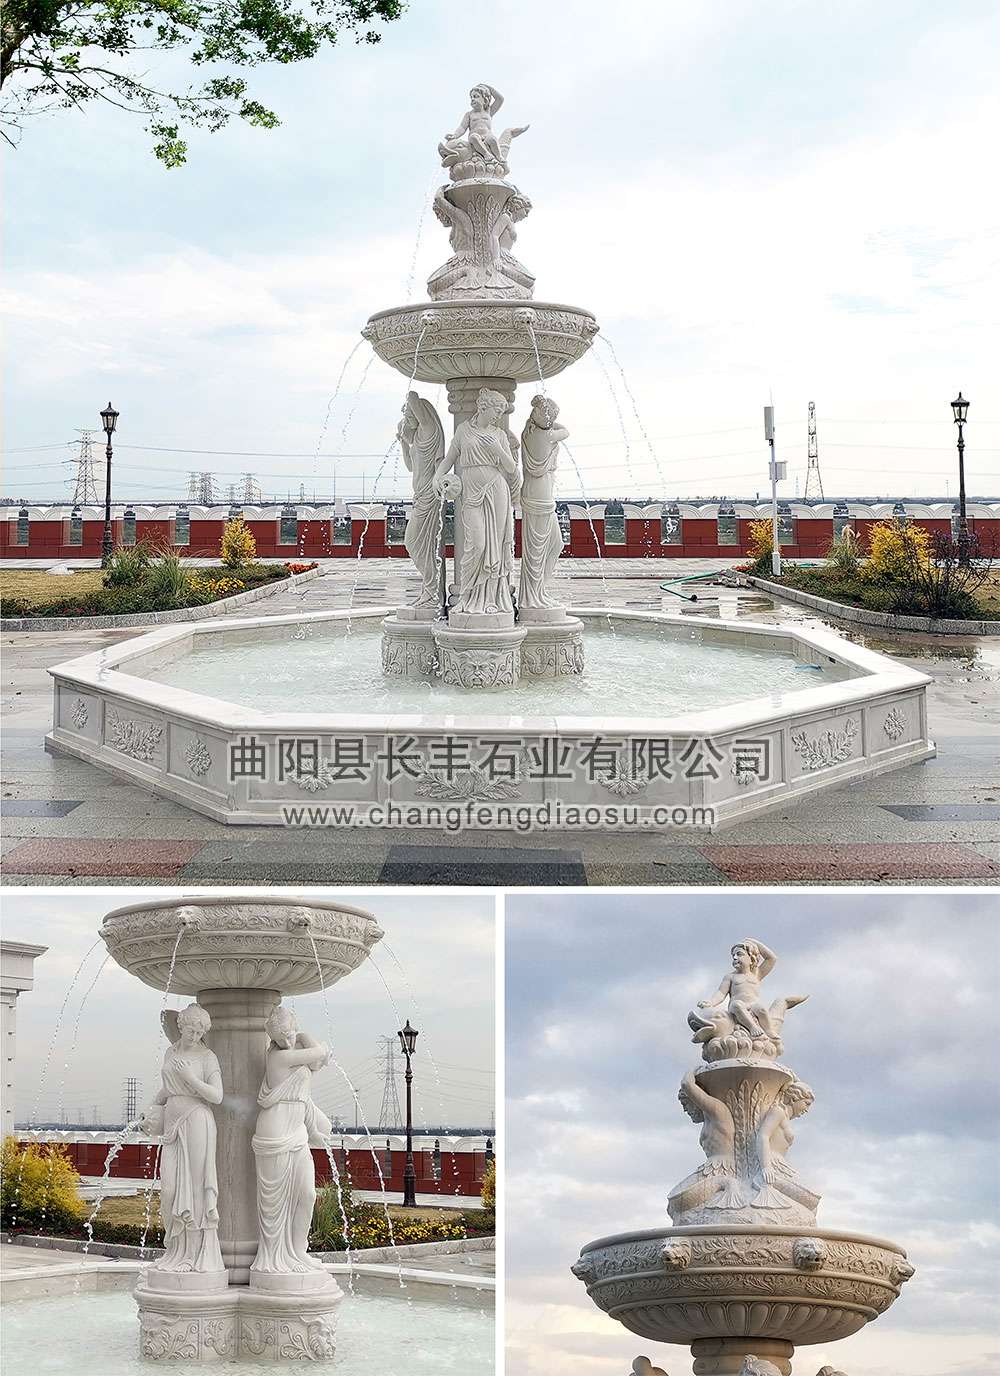 11-12-华为苏州研发中心-喷泉水景雕塑-2019年-1001.jpg